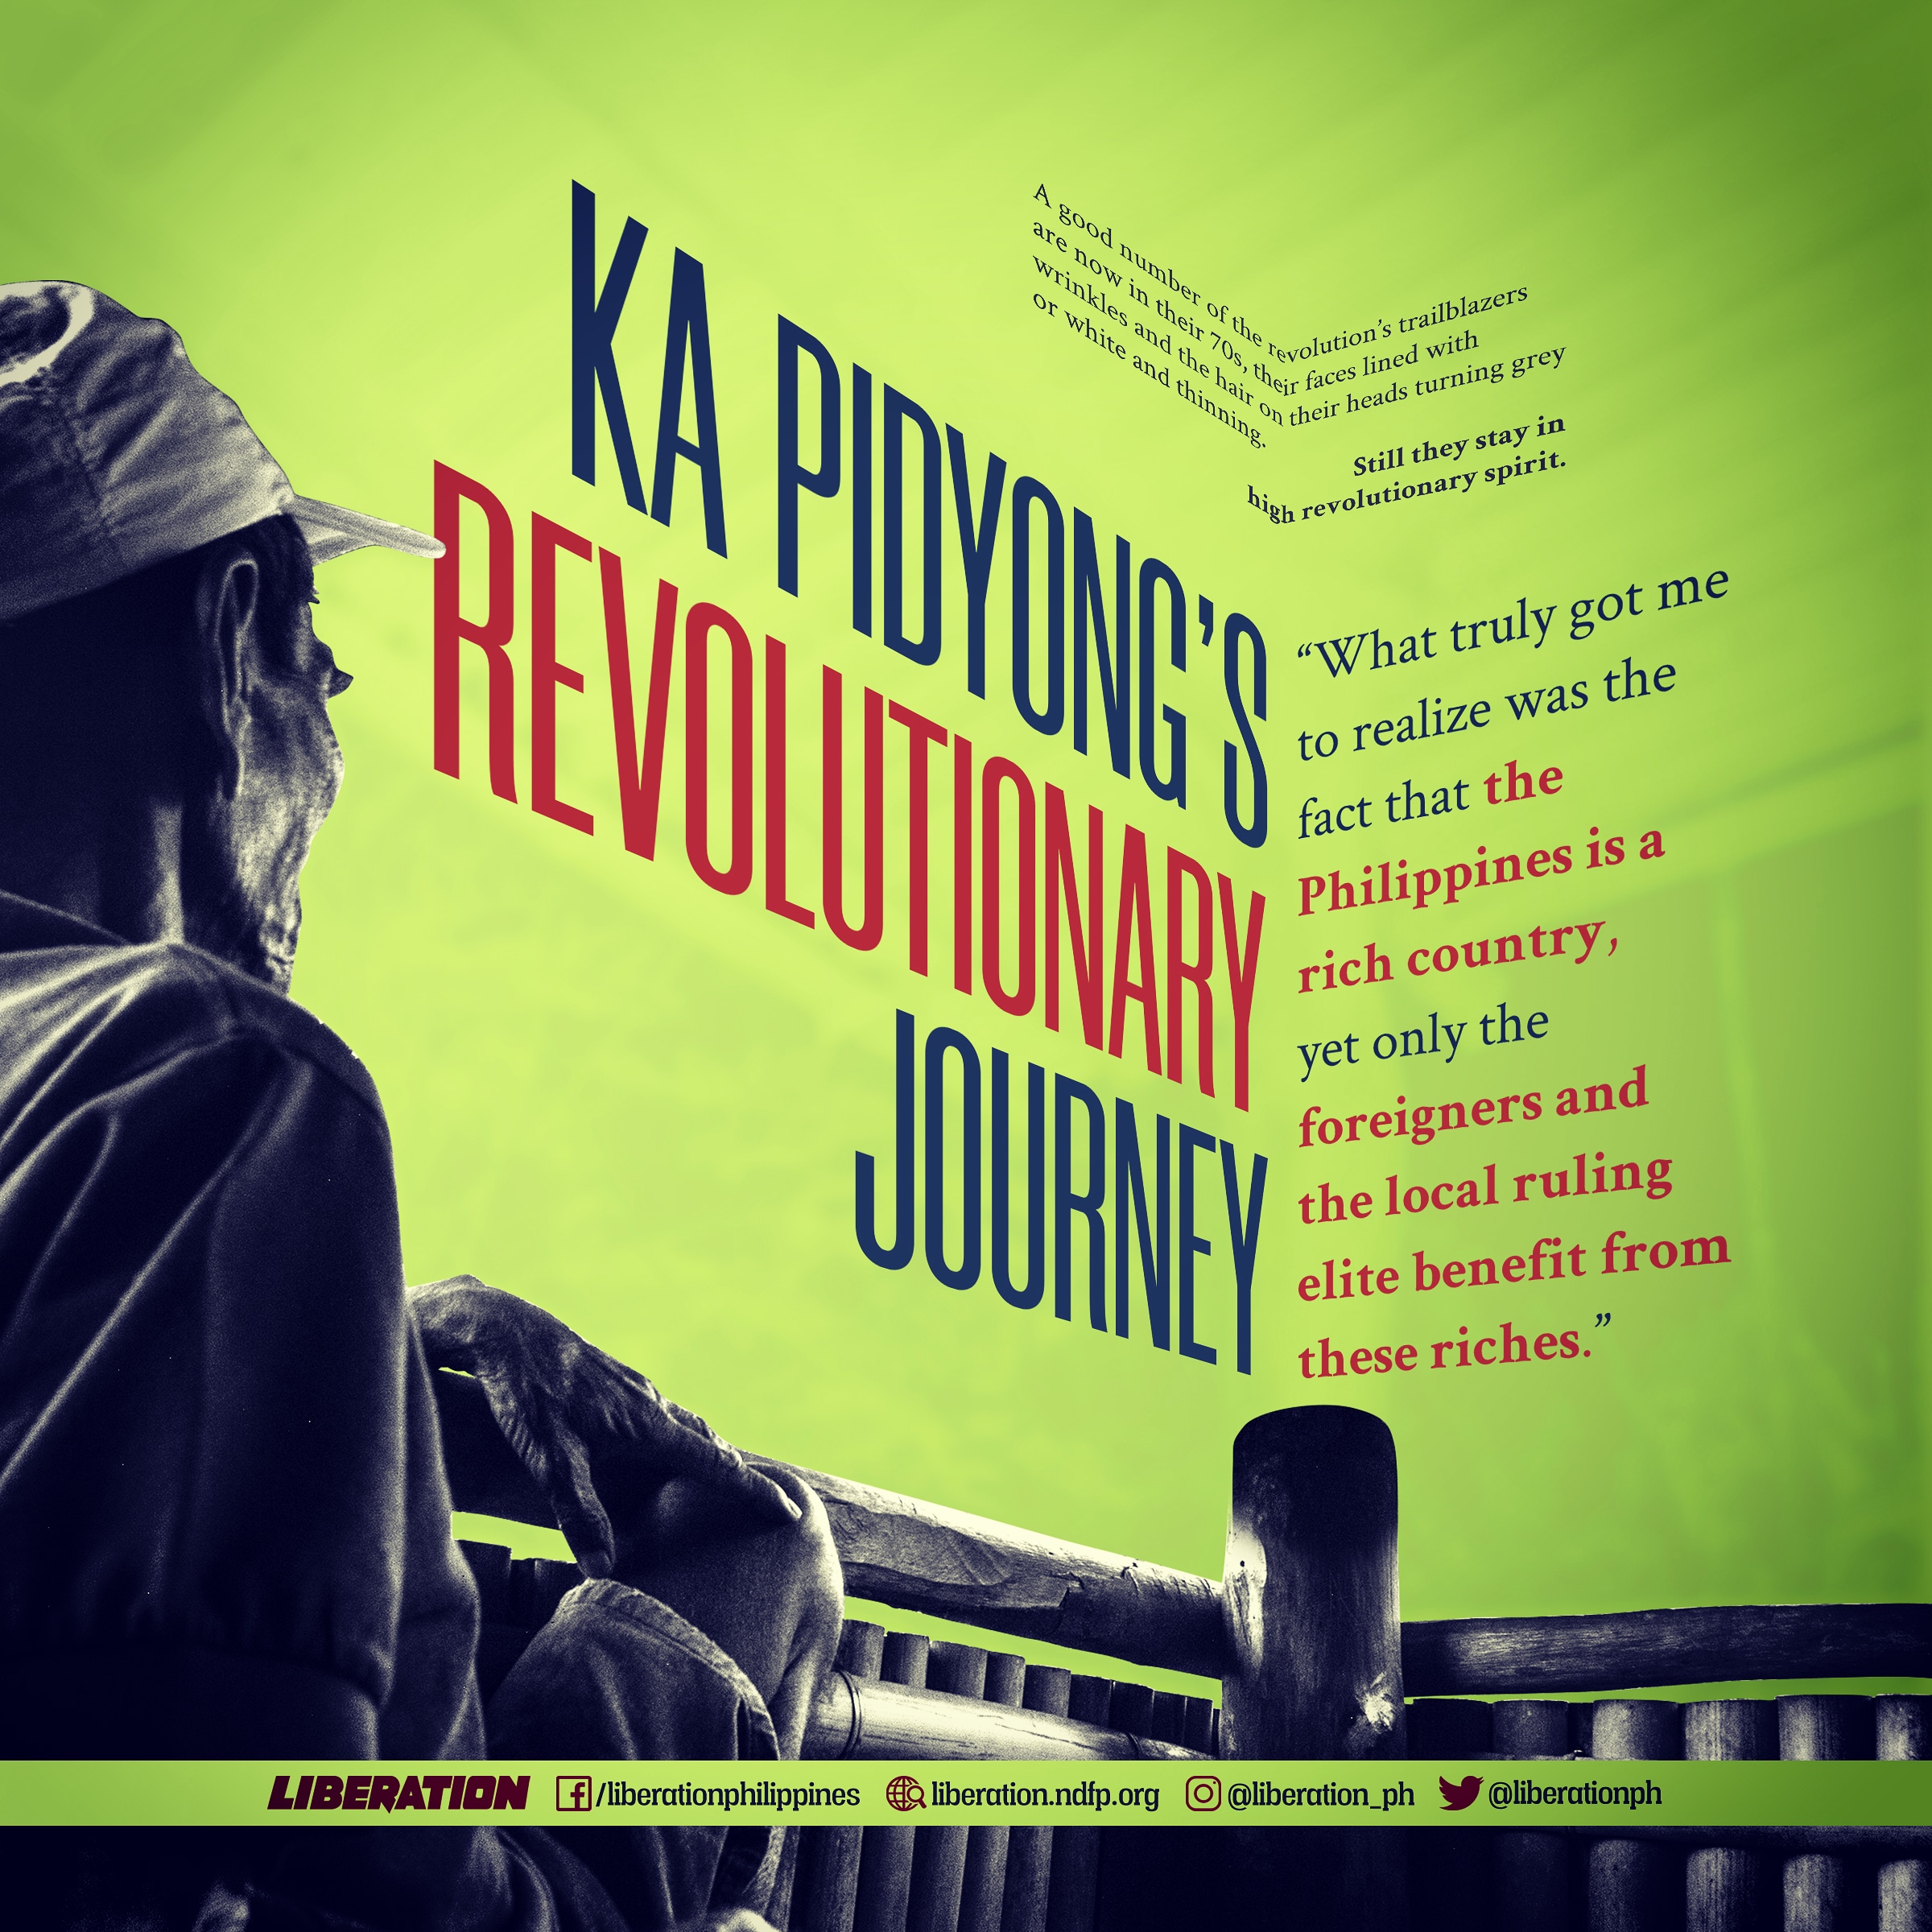 Революционное путешествие Ка Пидьонга